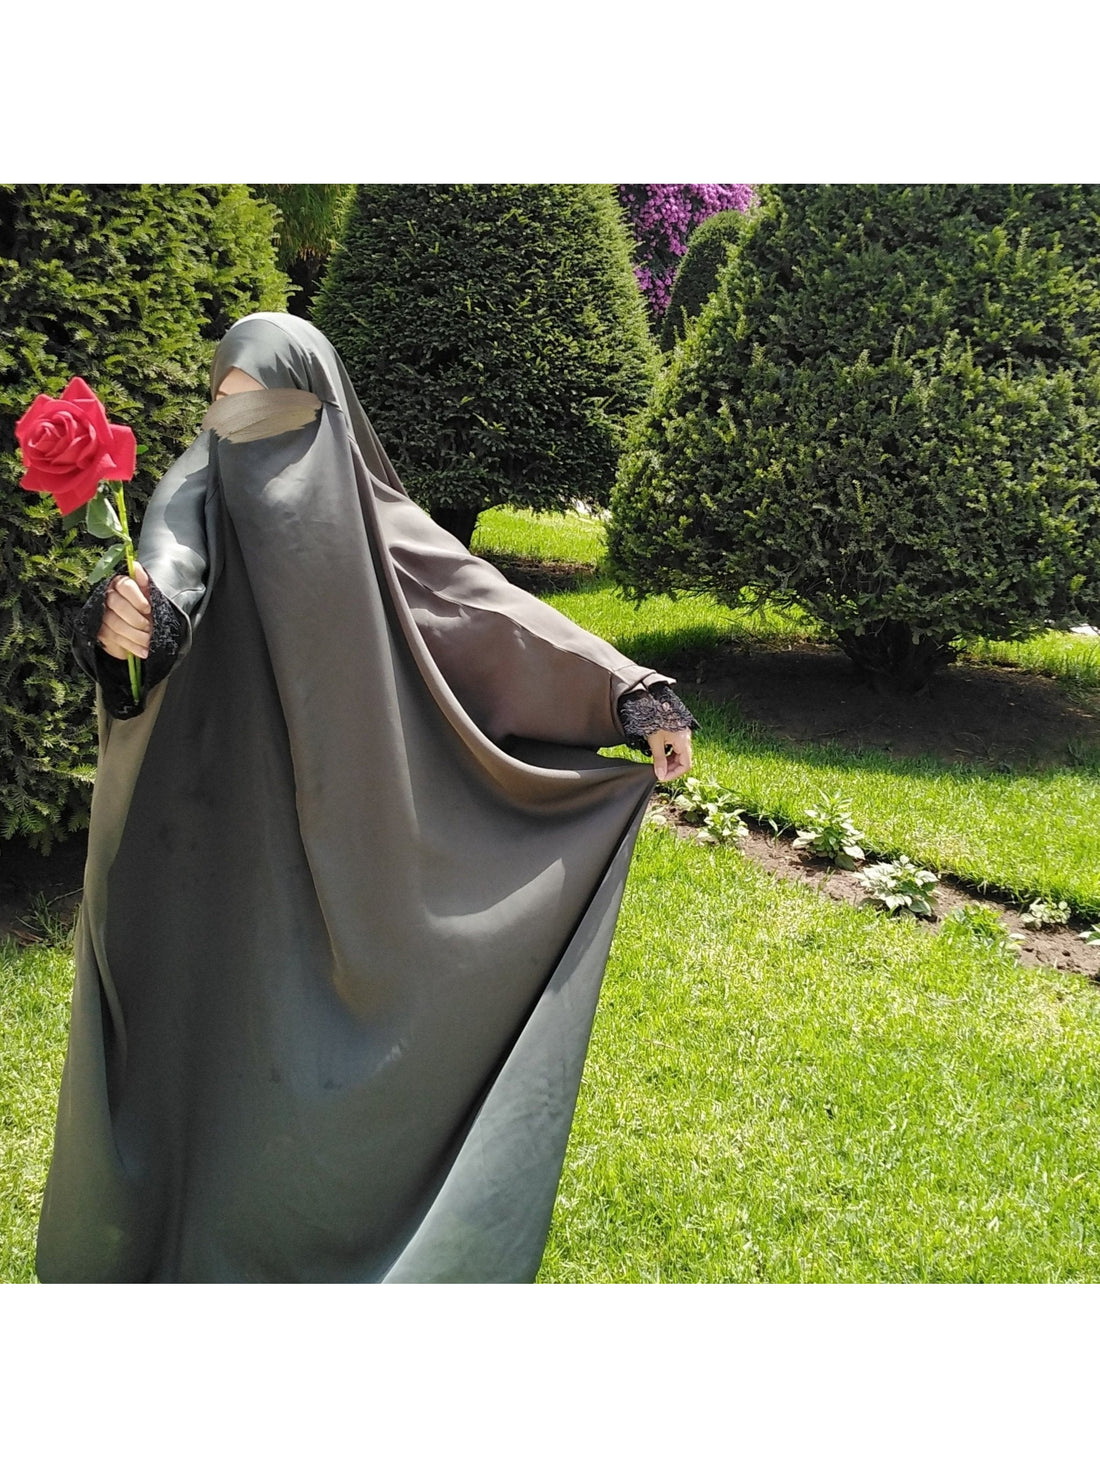 Luxury Fan Lace sleeve 1piece Jilbab/ prayer dress - OnHerDeen